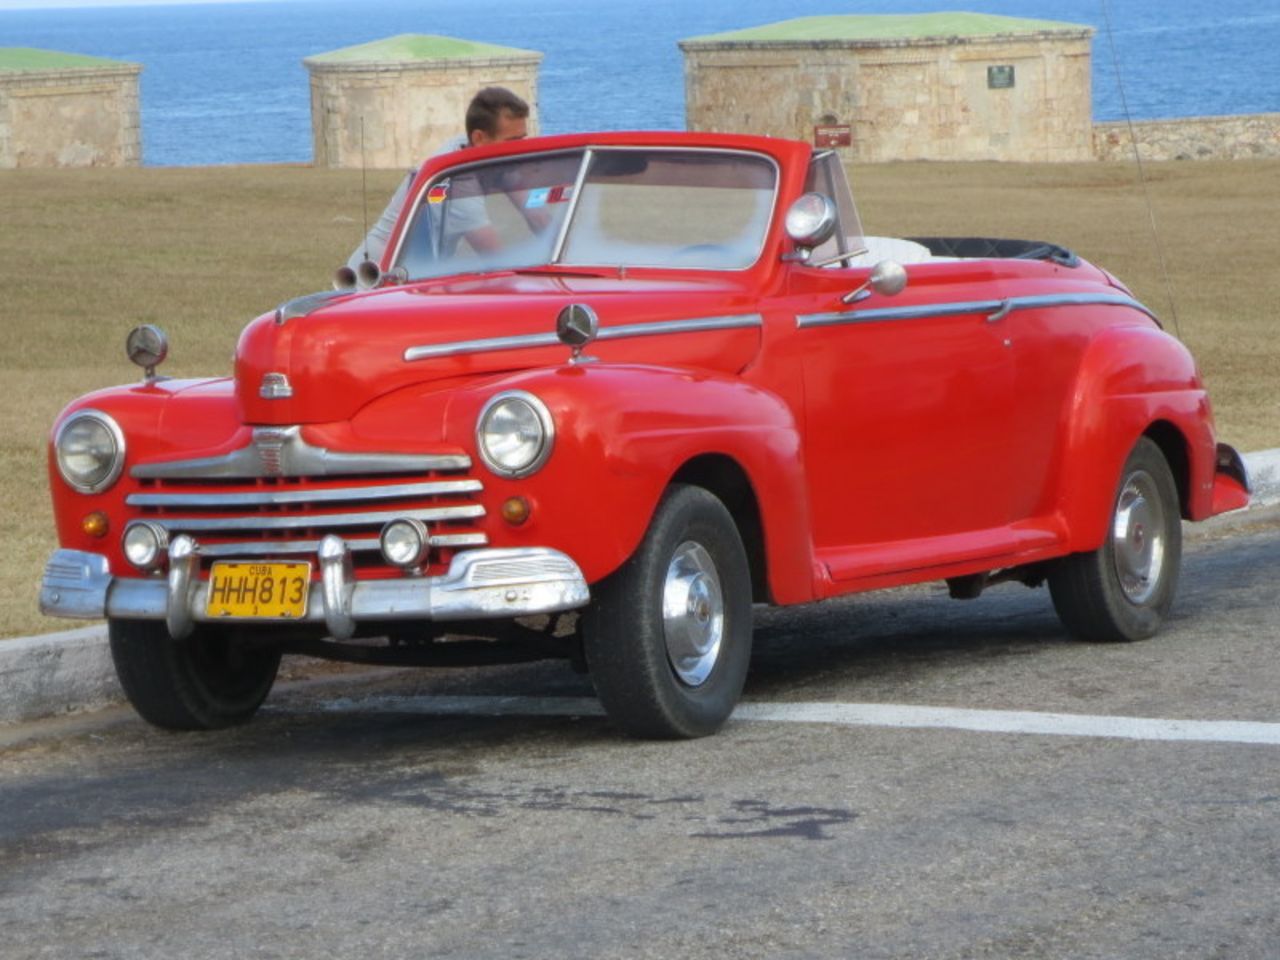 John Cade de London, Ontario, vacacionó en La Habana el año pasado por una semana y dijo que solo por los coches antiguos el viaje valió la pena.